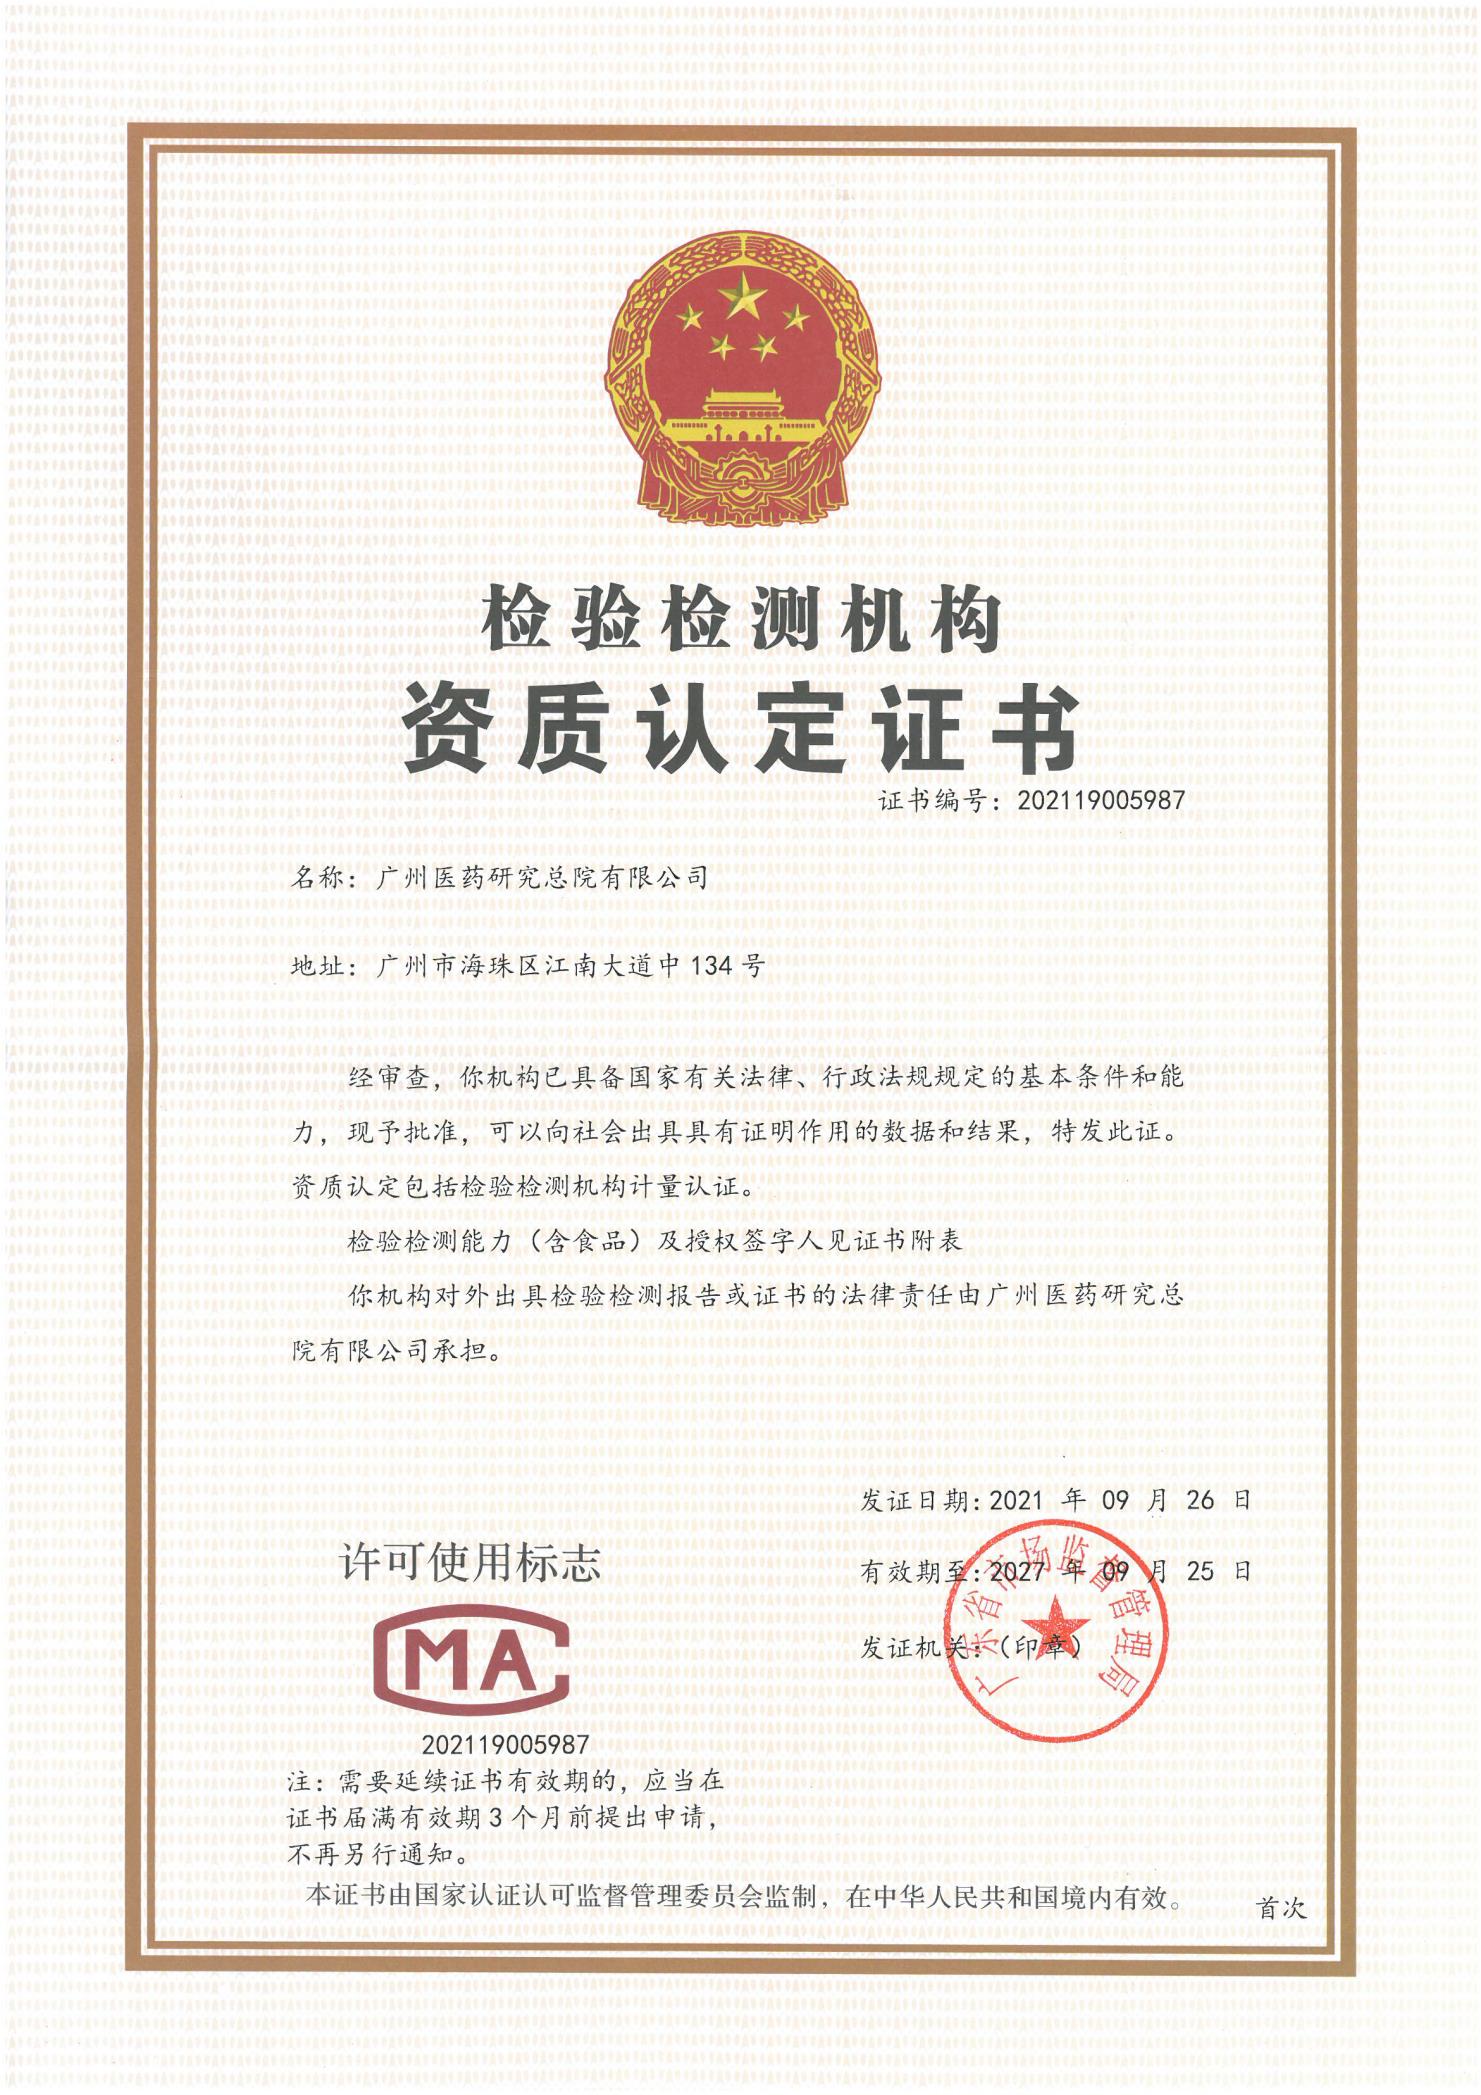 热烈祝贺广药研究总院获得CMA资质认定证书